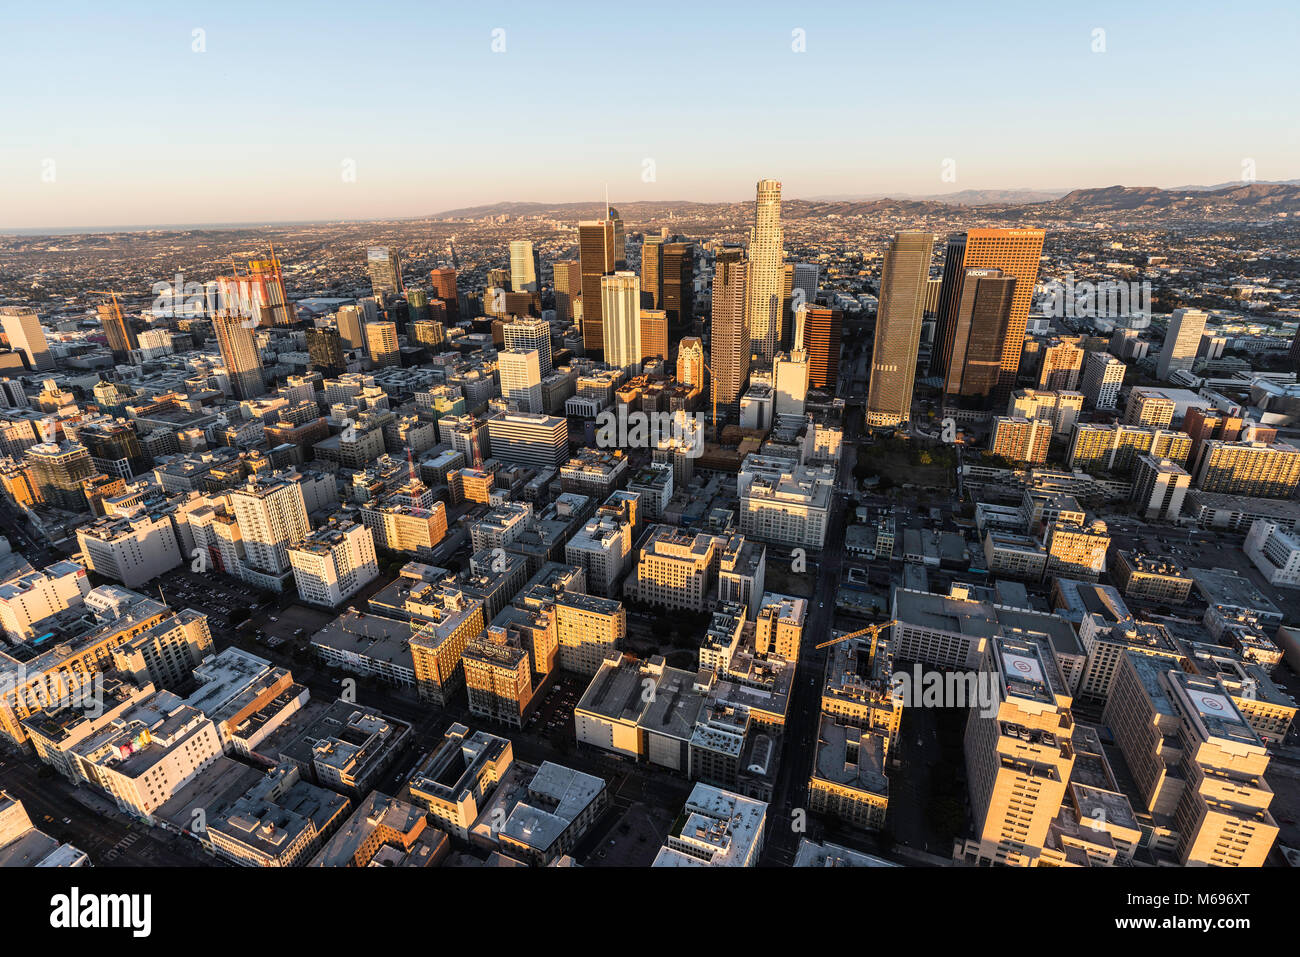 Los Angeles, Californie, USA - 20 février 2018,m : Tôt le matin vue aérienne de rues et bâtiments dans le noyau urbain du centre-ville de LA. Banque D'Images